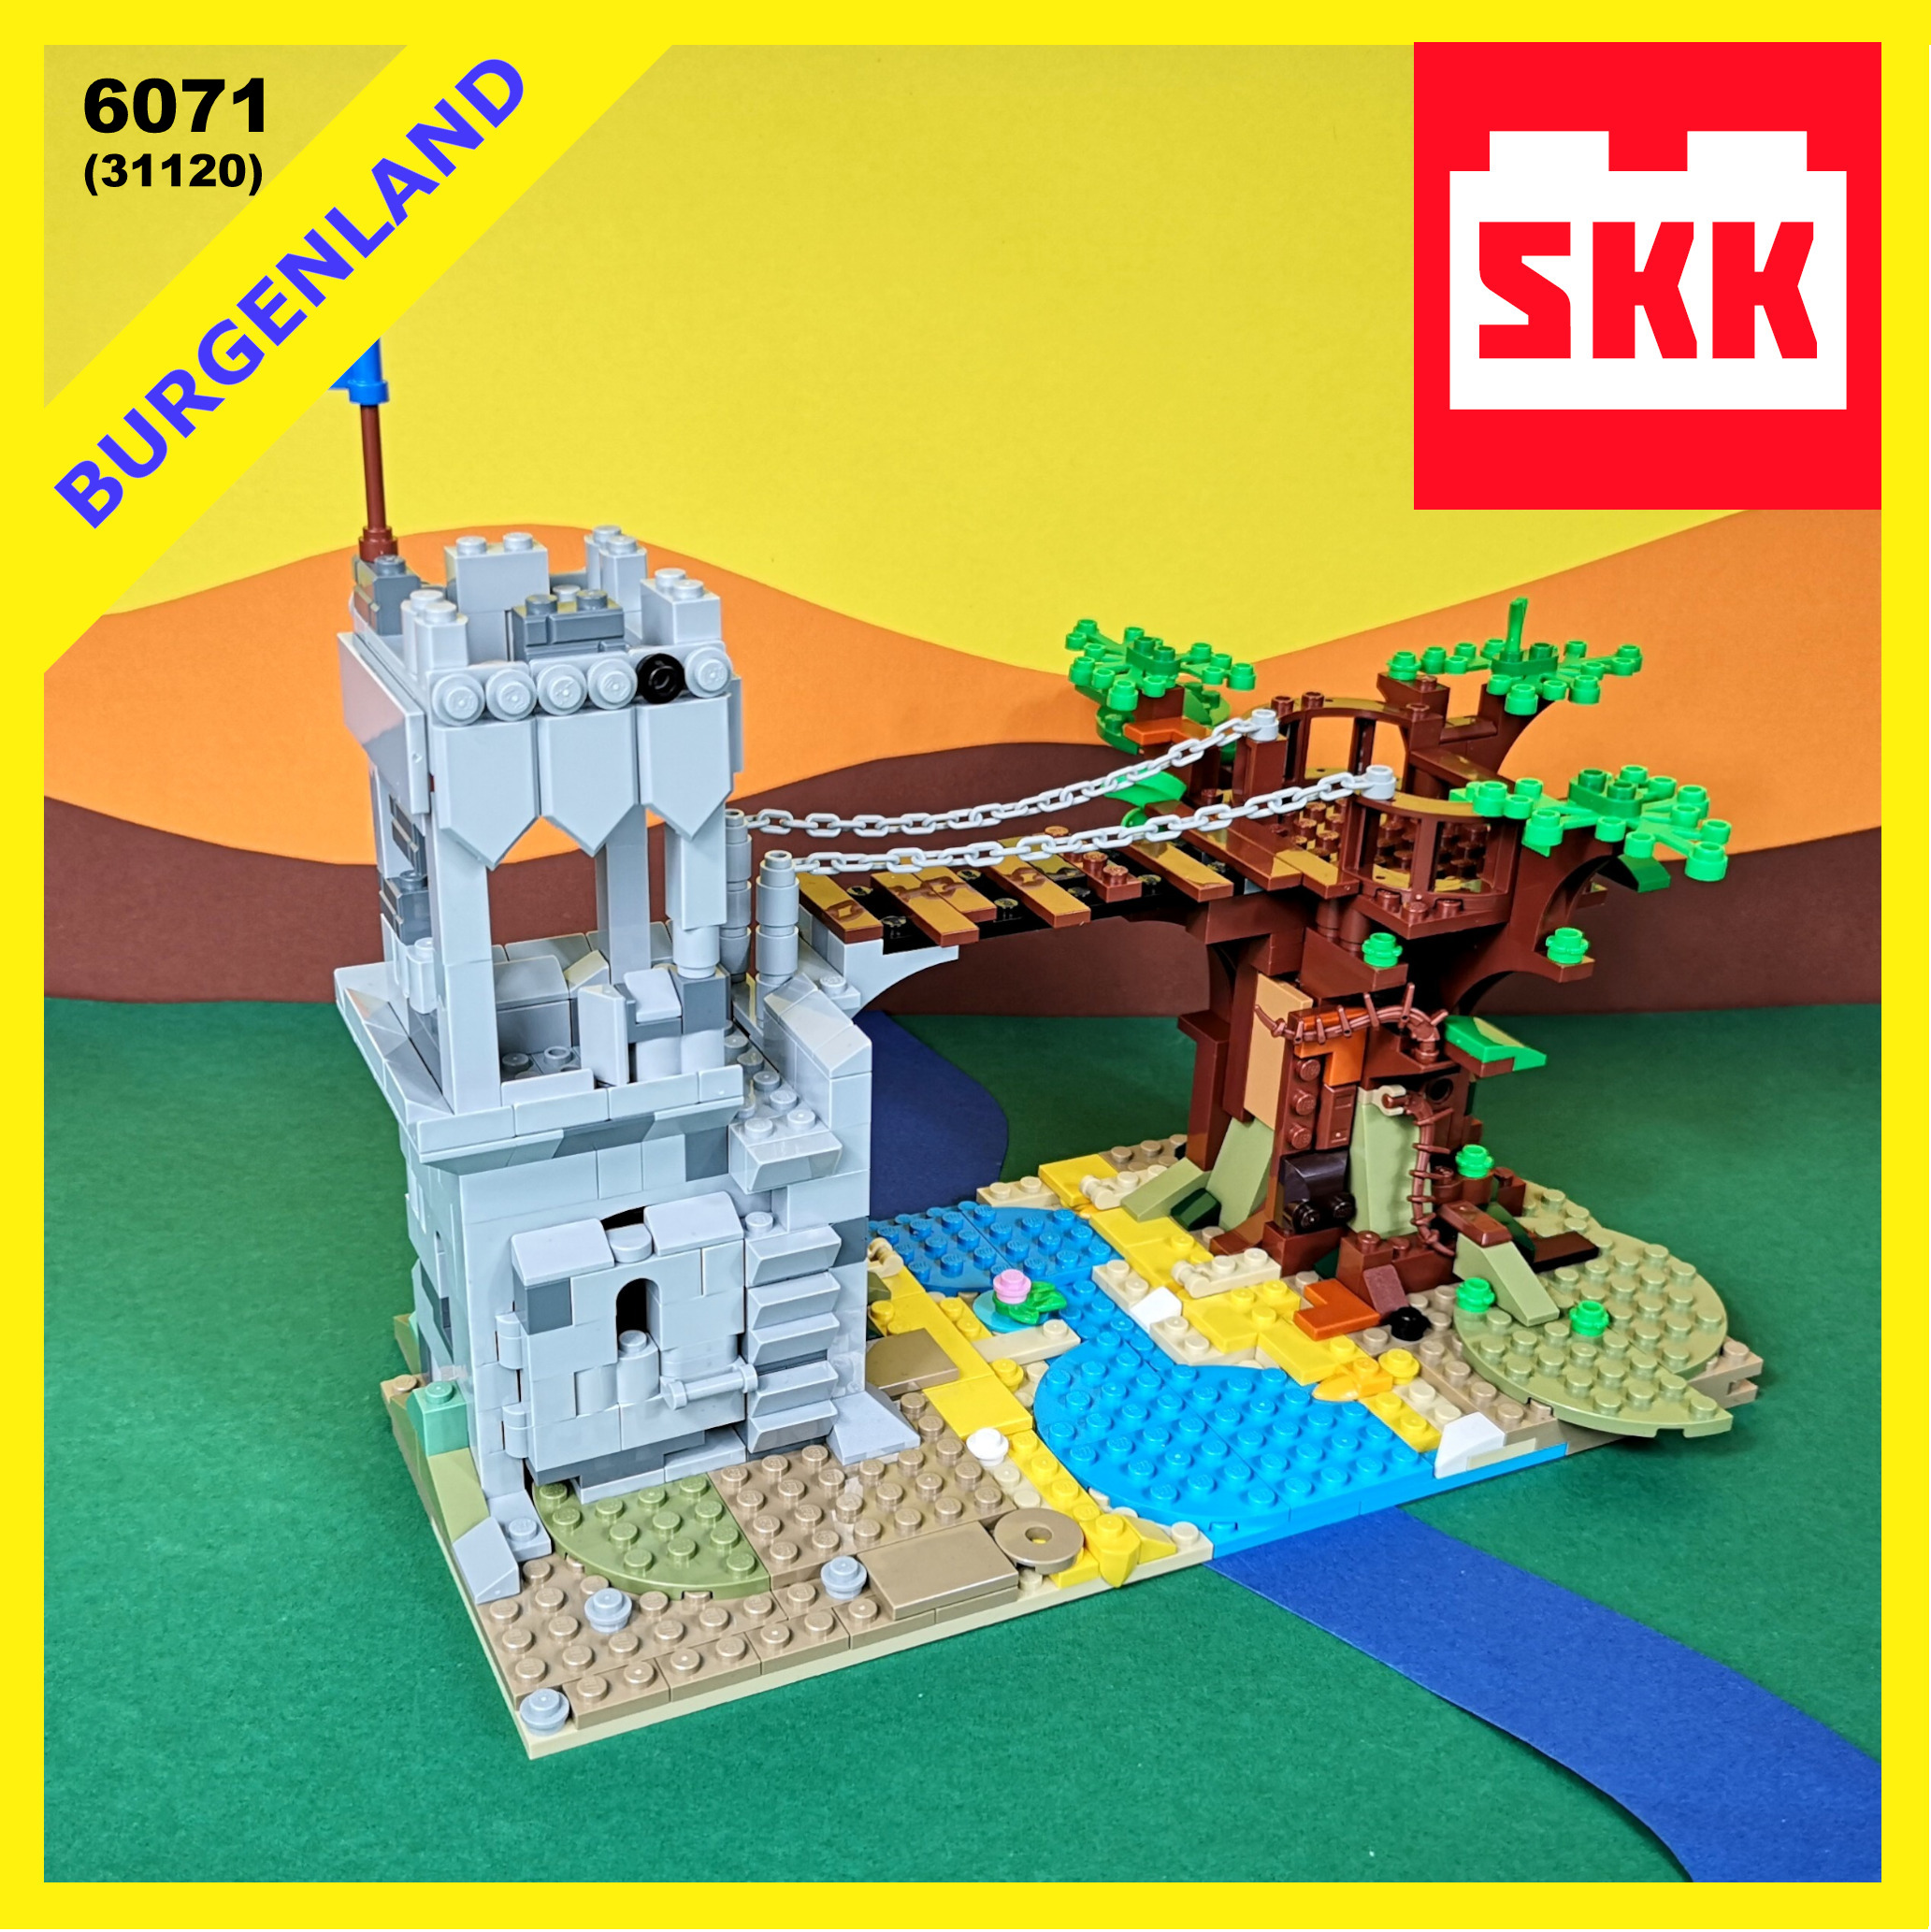 Coverbild der digitalen Bauanleitung von Lego-Set 6071 aus Lego-Set 31120